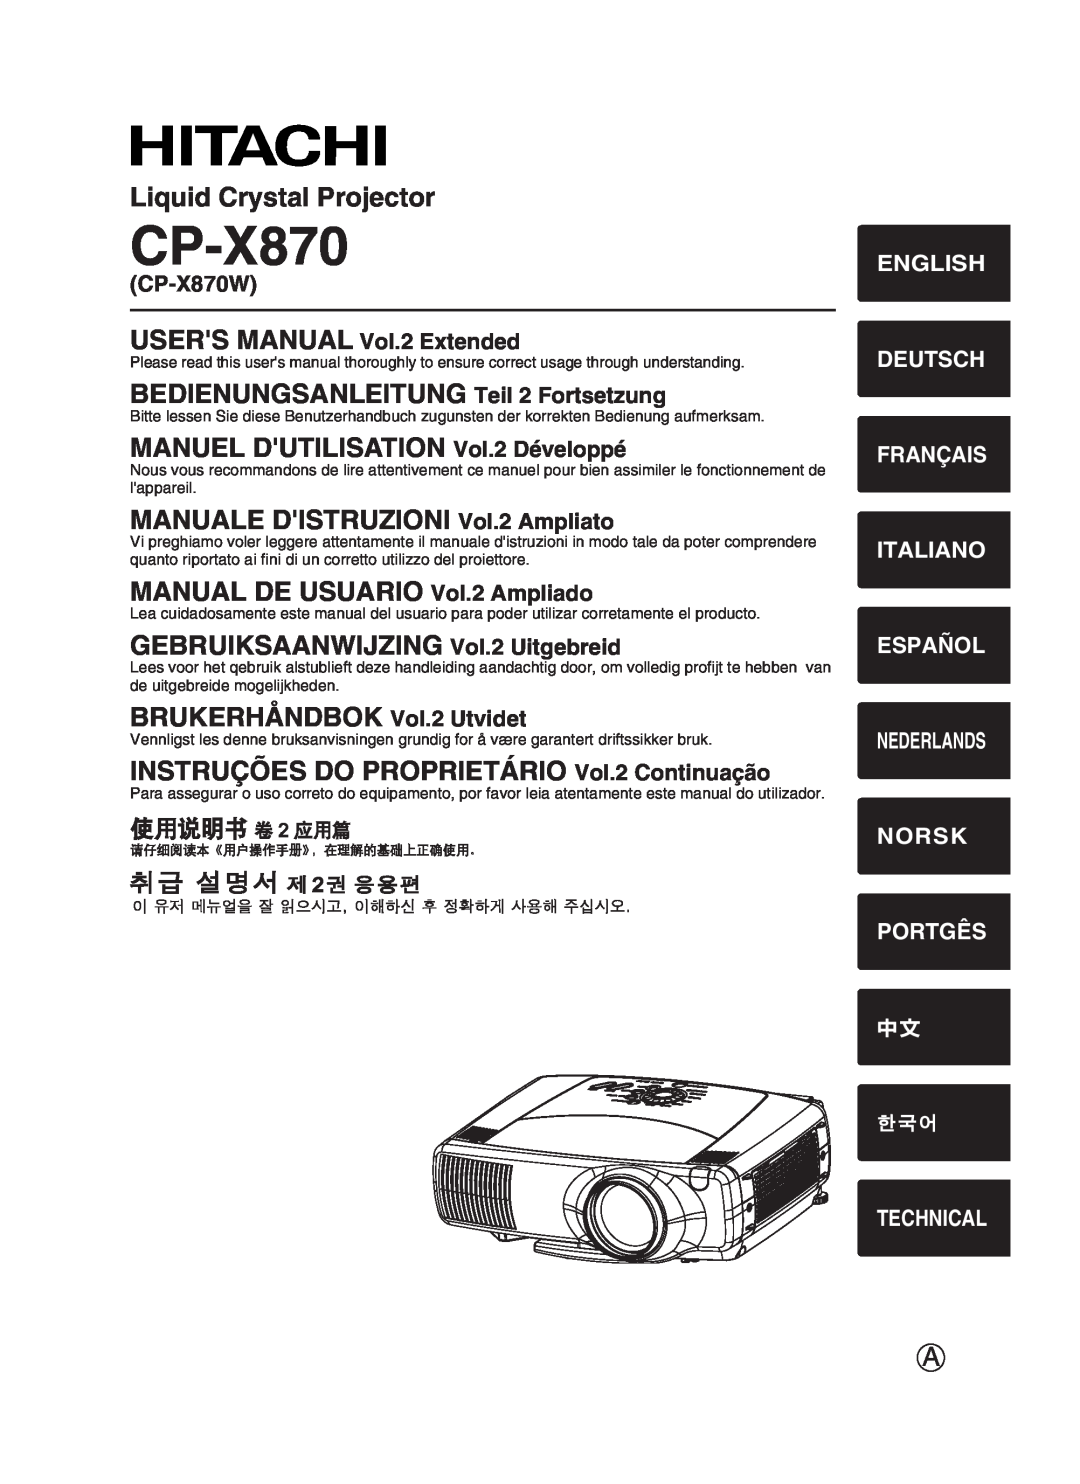 Hitachi user manual CP-X870W, English Deutsch Français Italiano Español, Norsk Portgês, Technical, Nederlands 